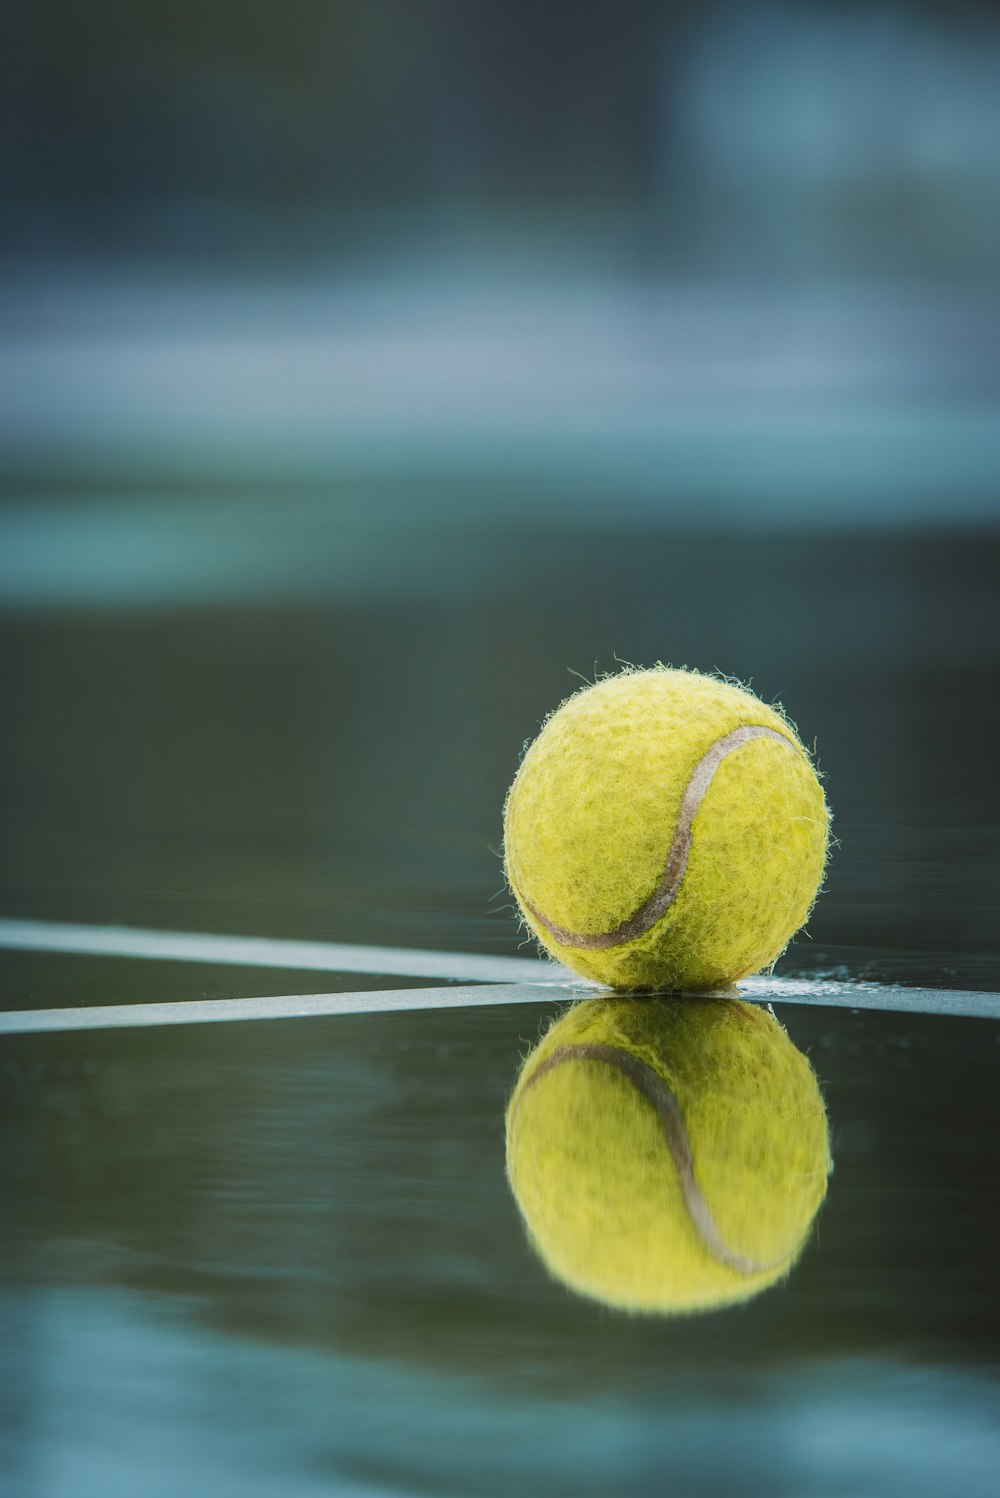 테니스 코트 위에 앉아 있는 테니스 공